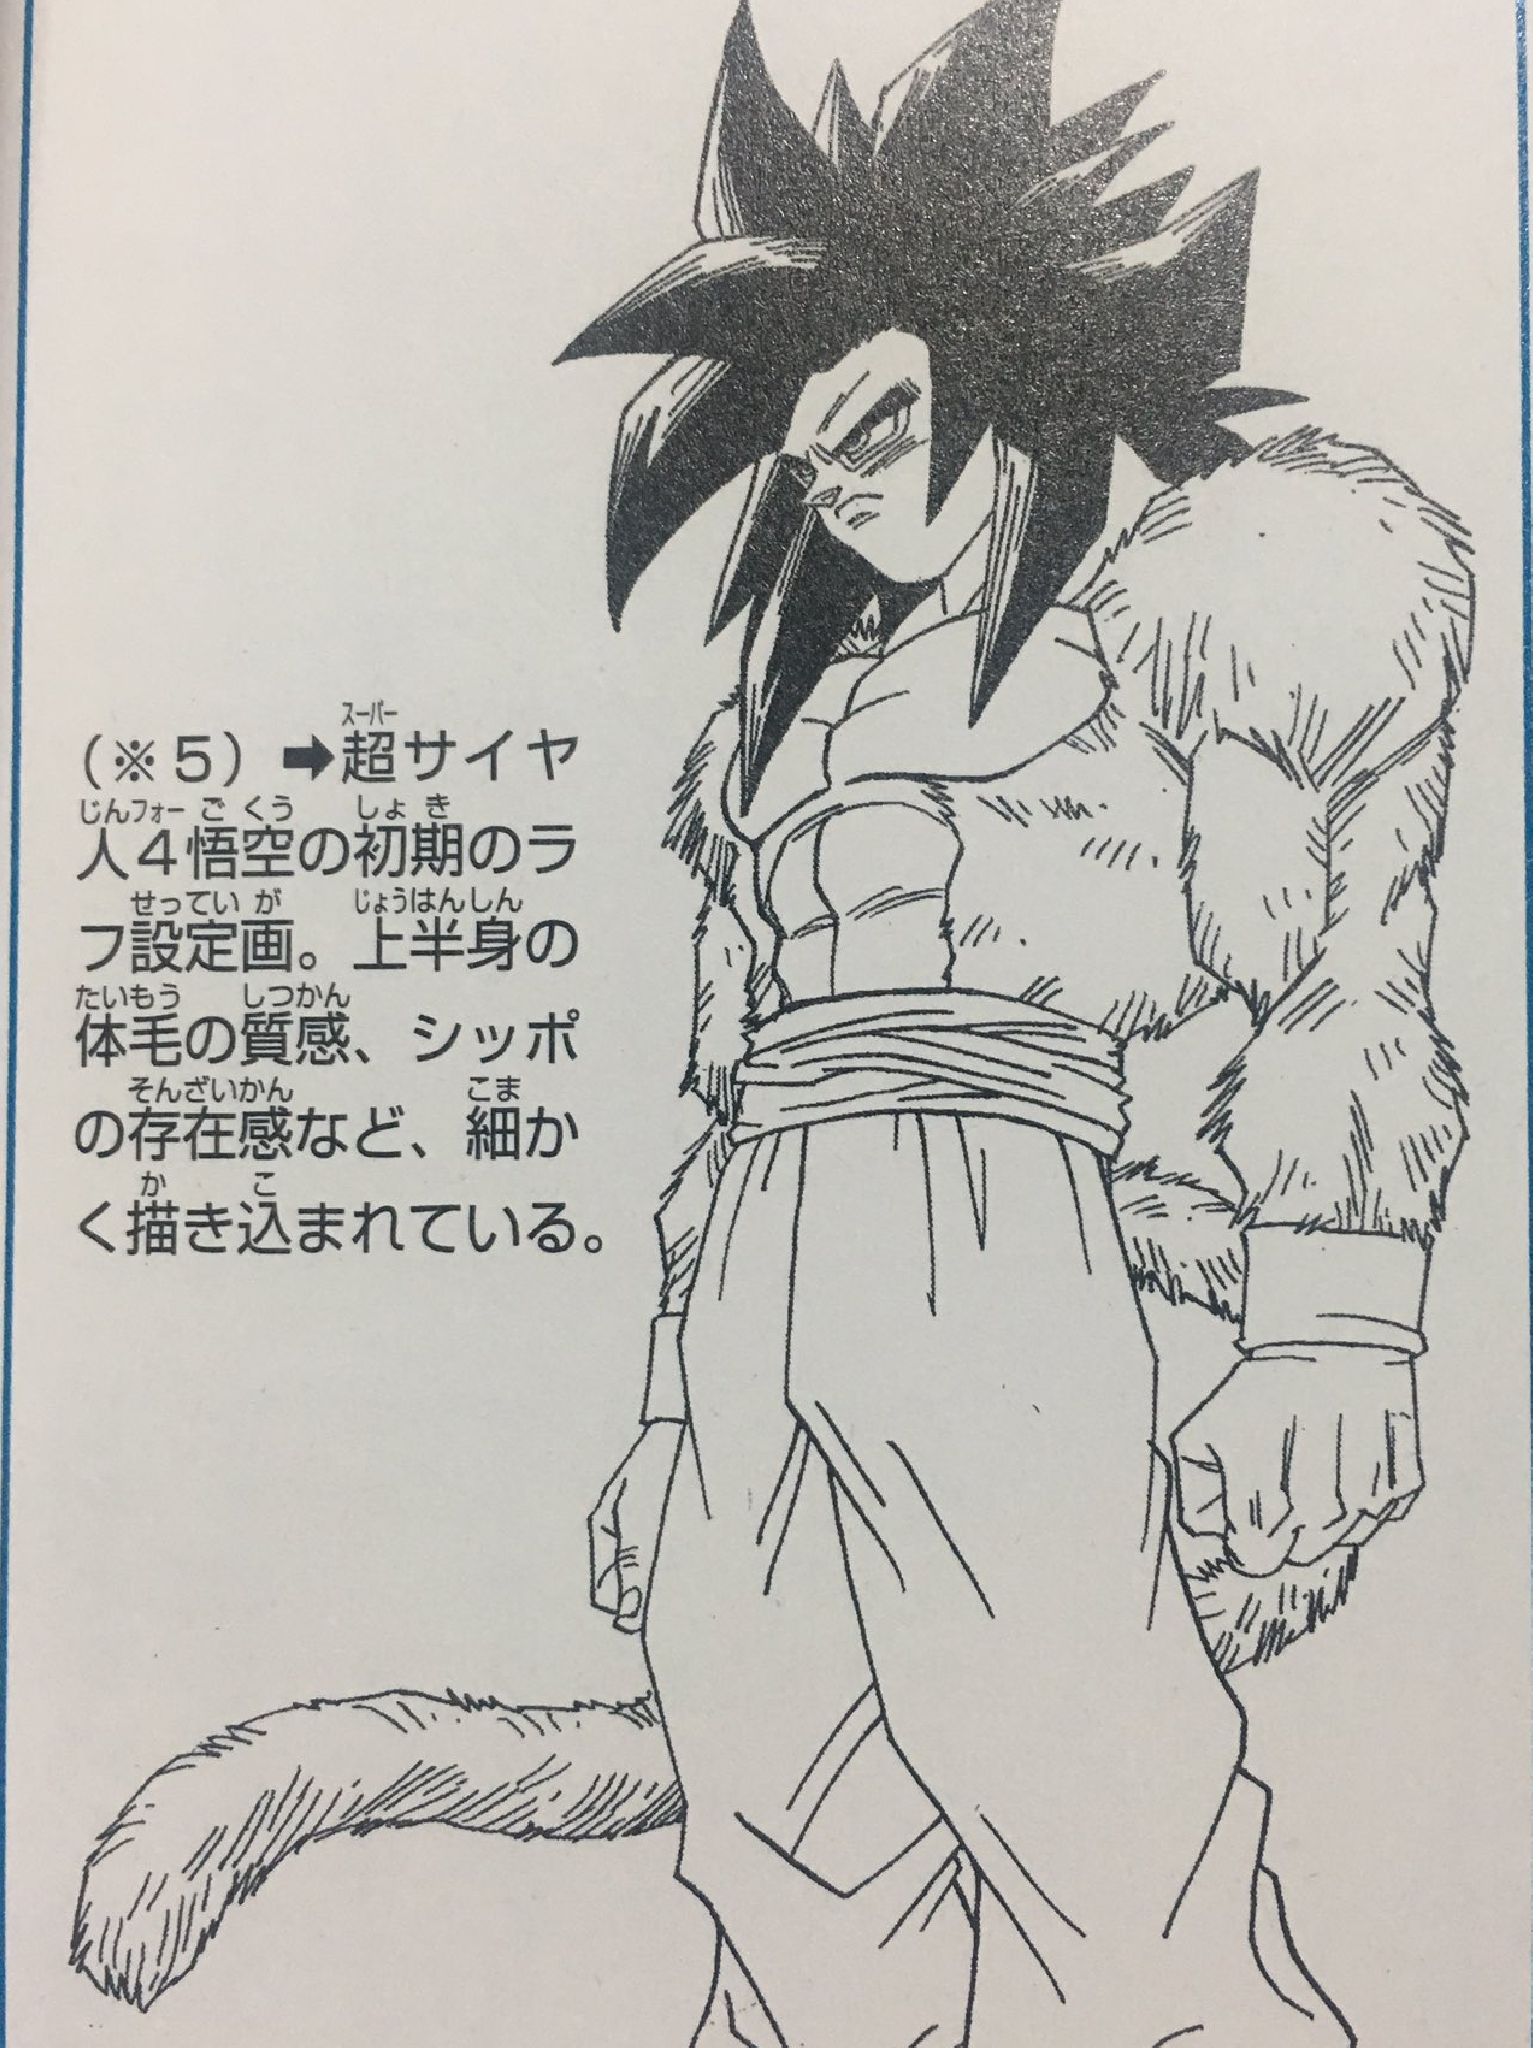 My drawing of Super Saiyan 4 Goku | DragonBallZ Amino